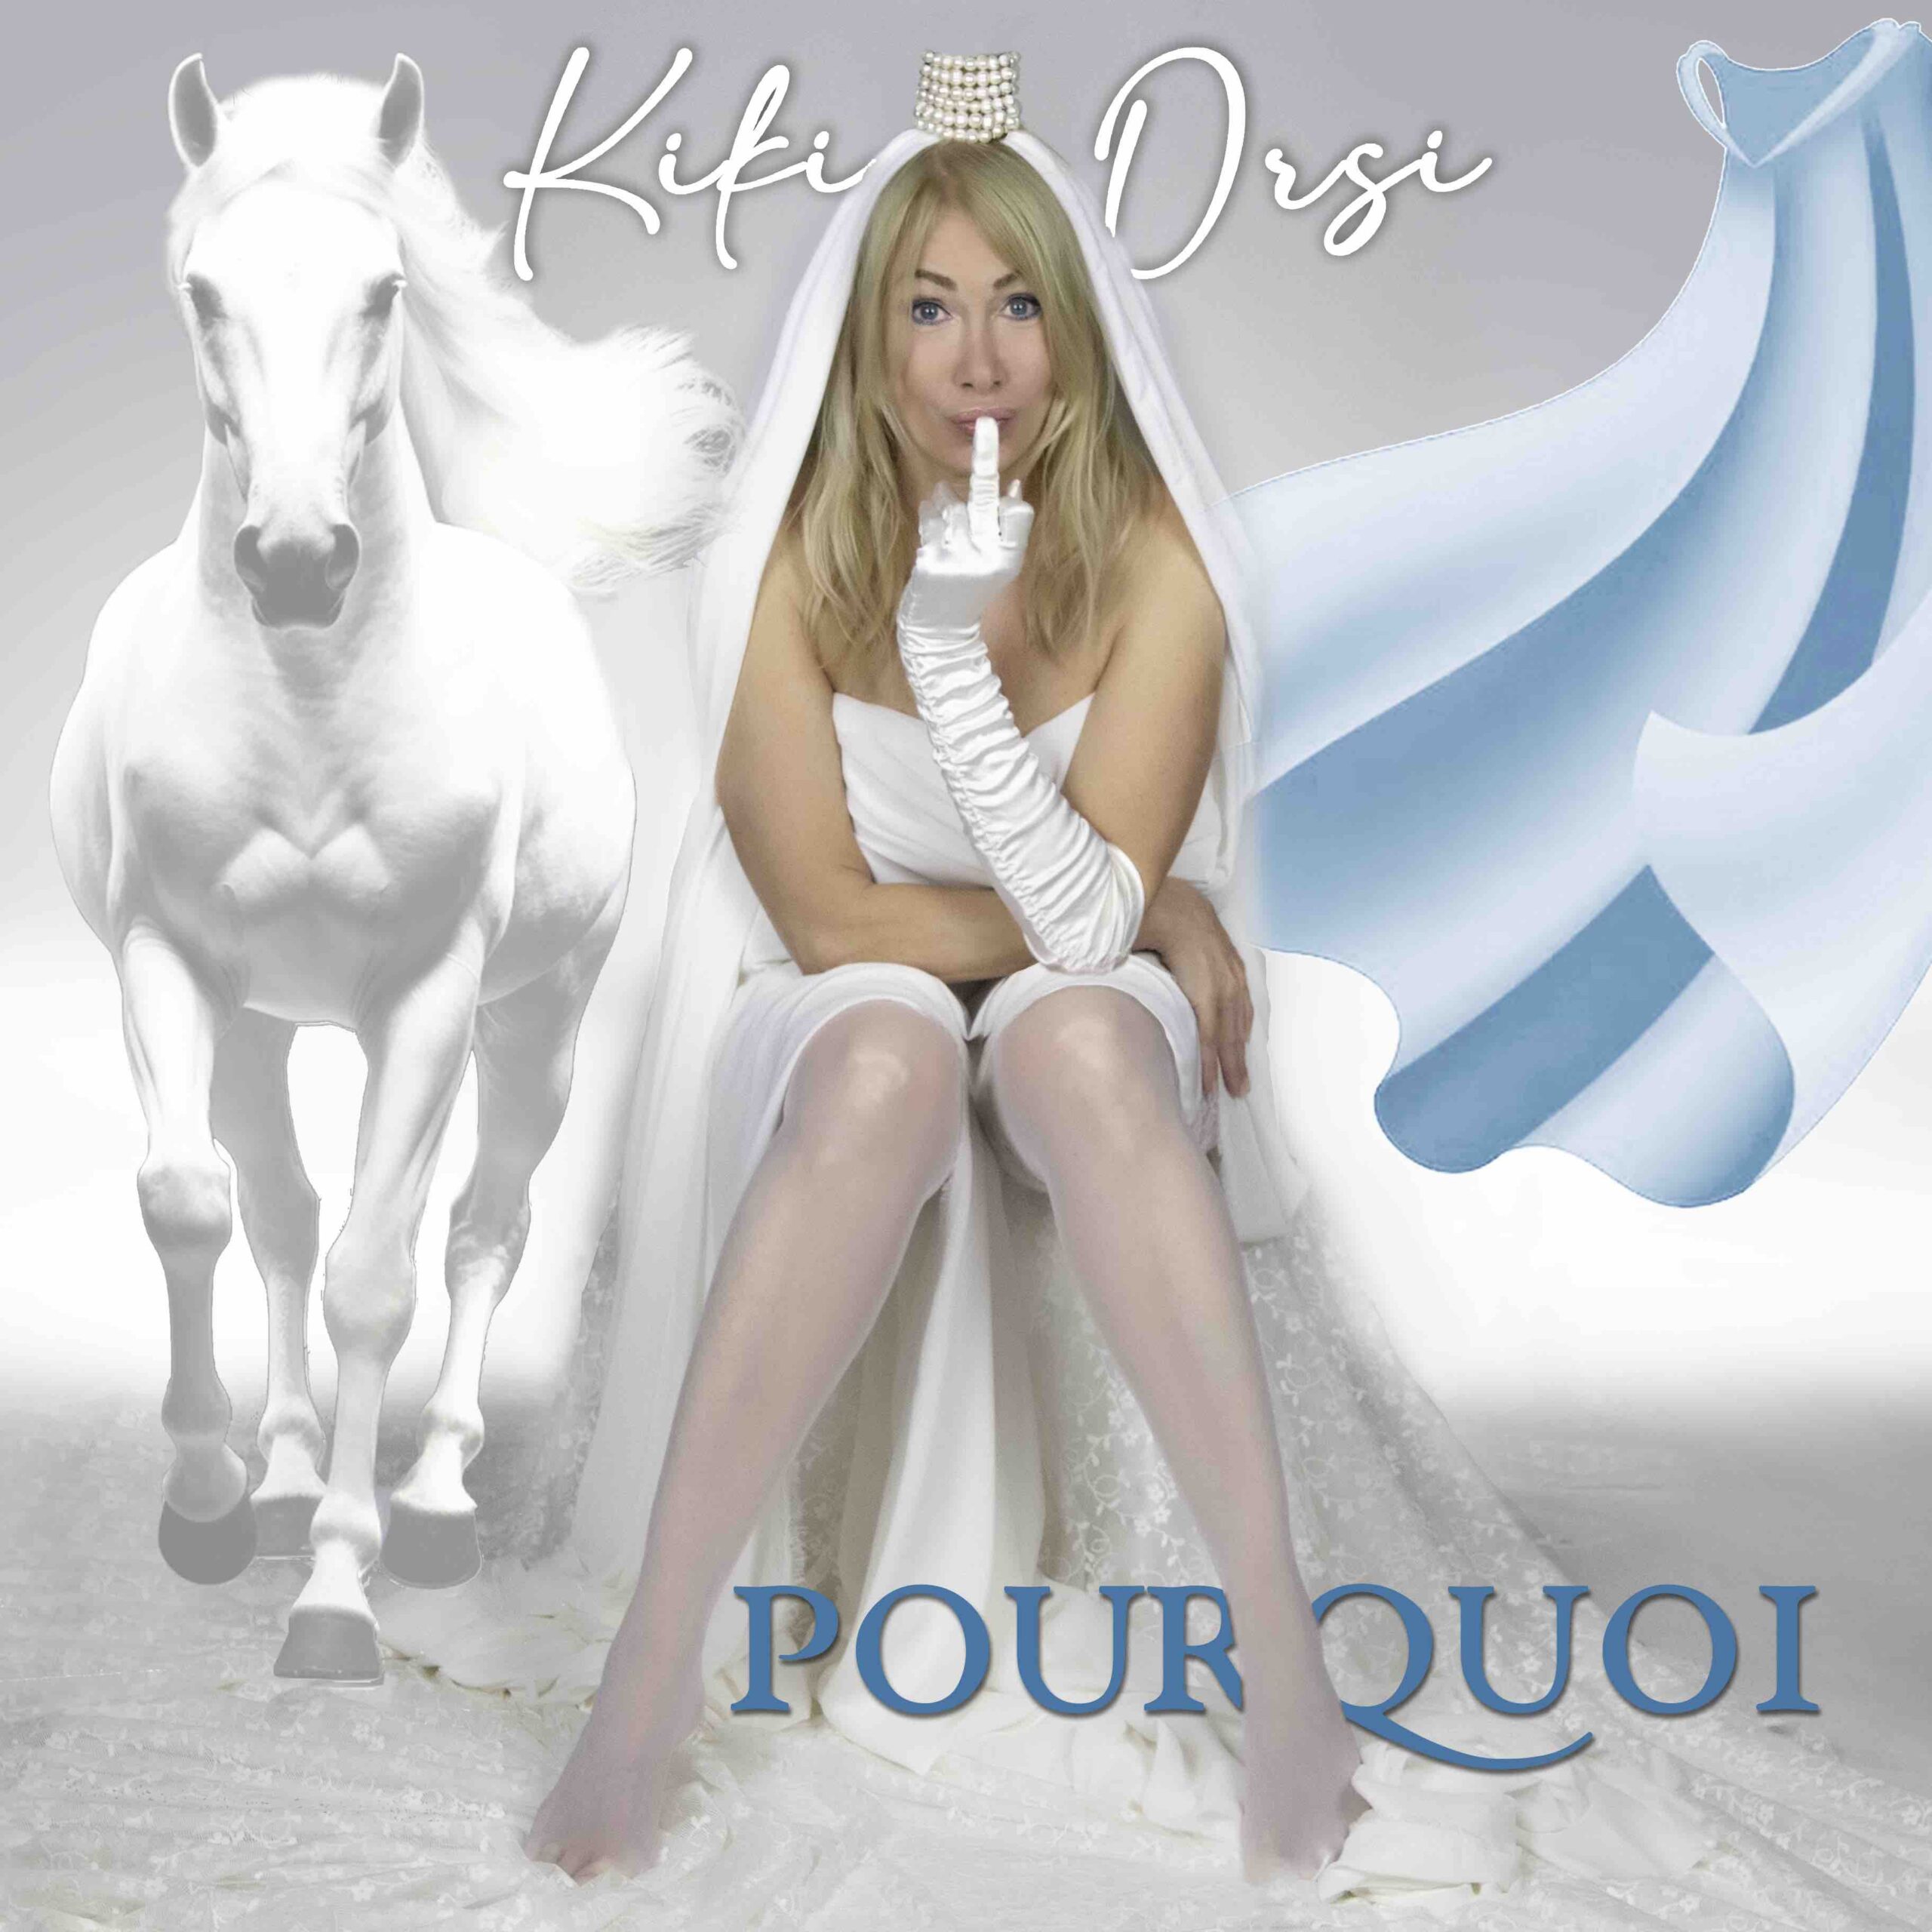 Kiki Orsi pubblica il nuovo singolo “Pourquoi”